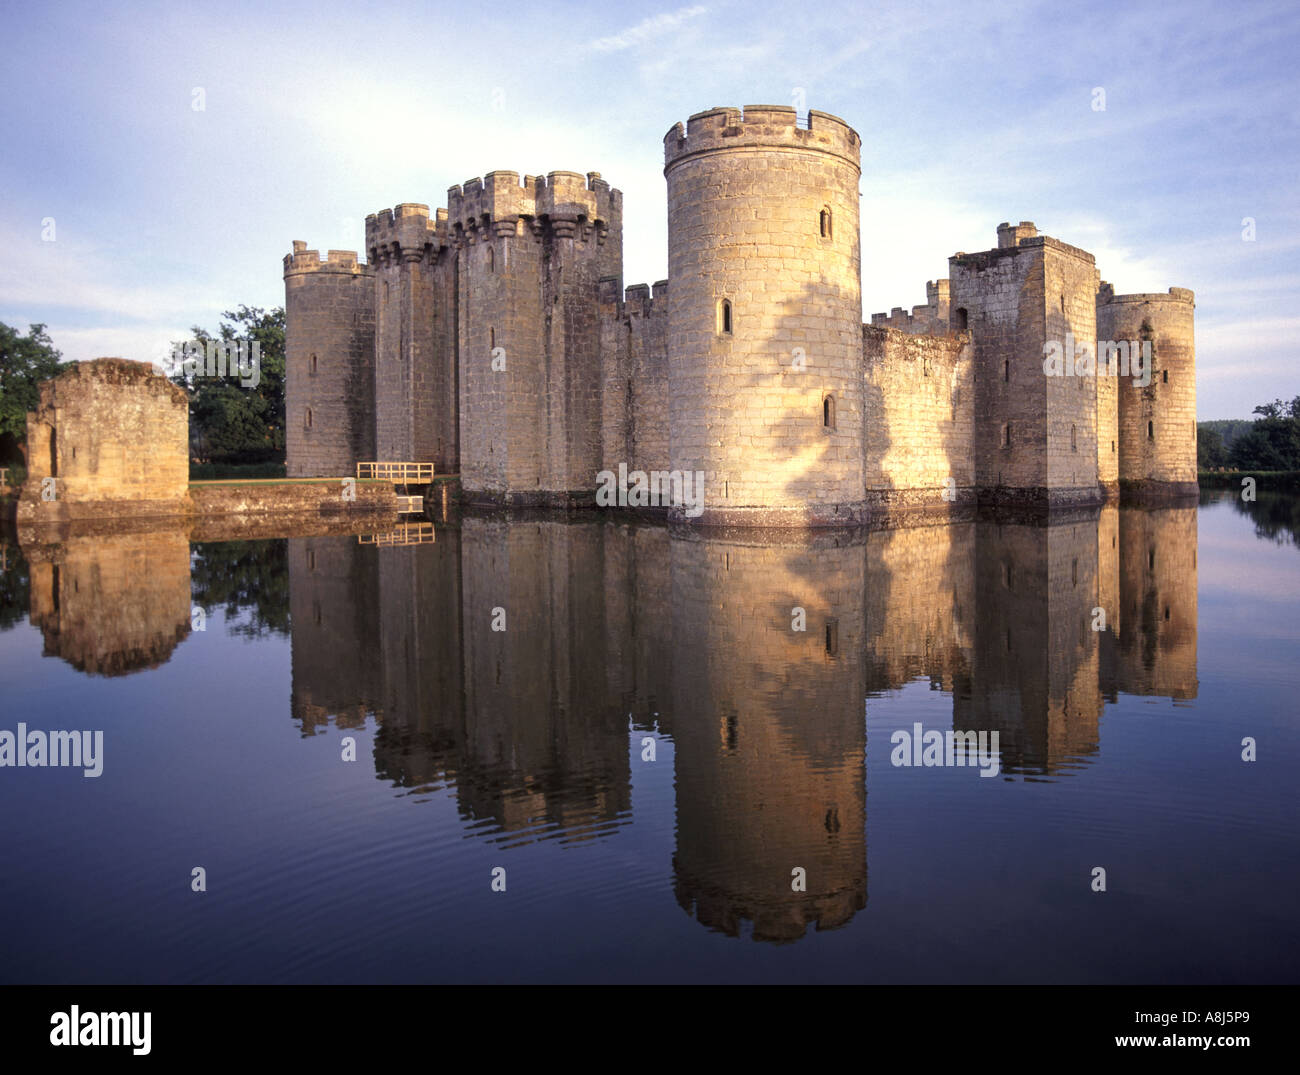 Cité médiévale Bodium a géné le château anglais et la réflexion dans l'eau encore calme de la moat près de Robertsbridge dans East Sussex Angleterre Royaume-Uni Banque D'Images